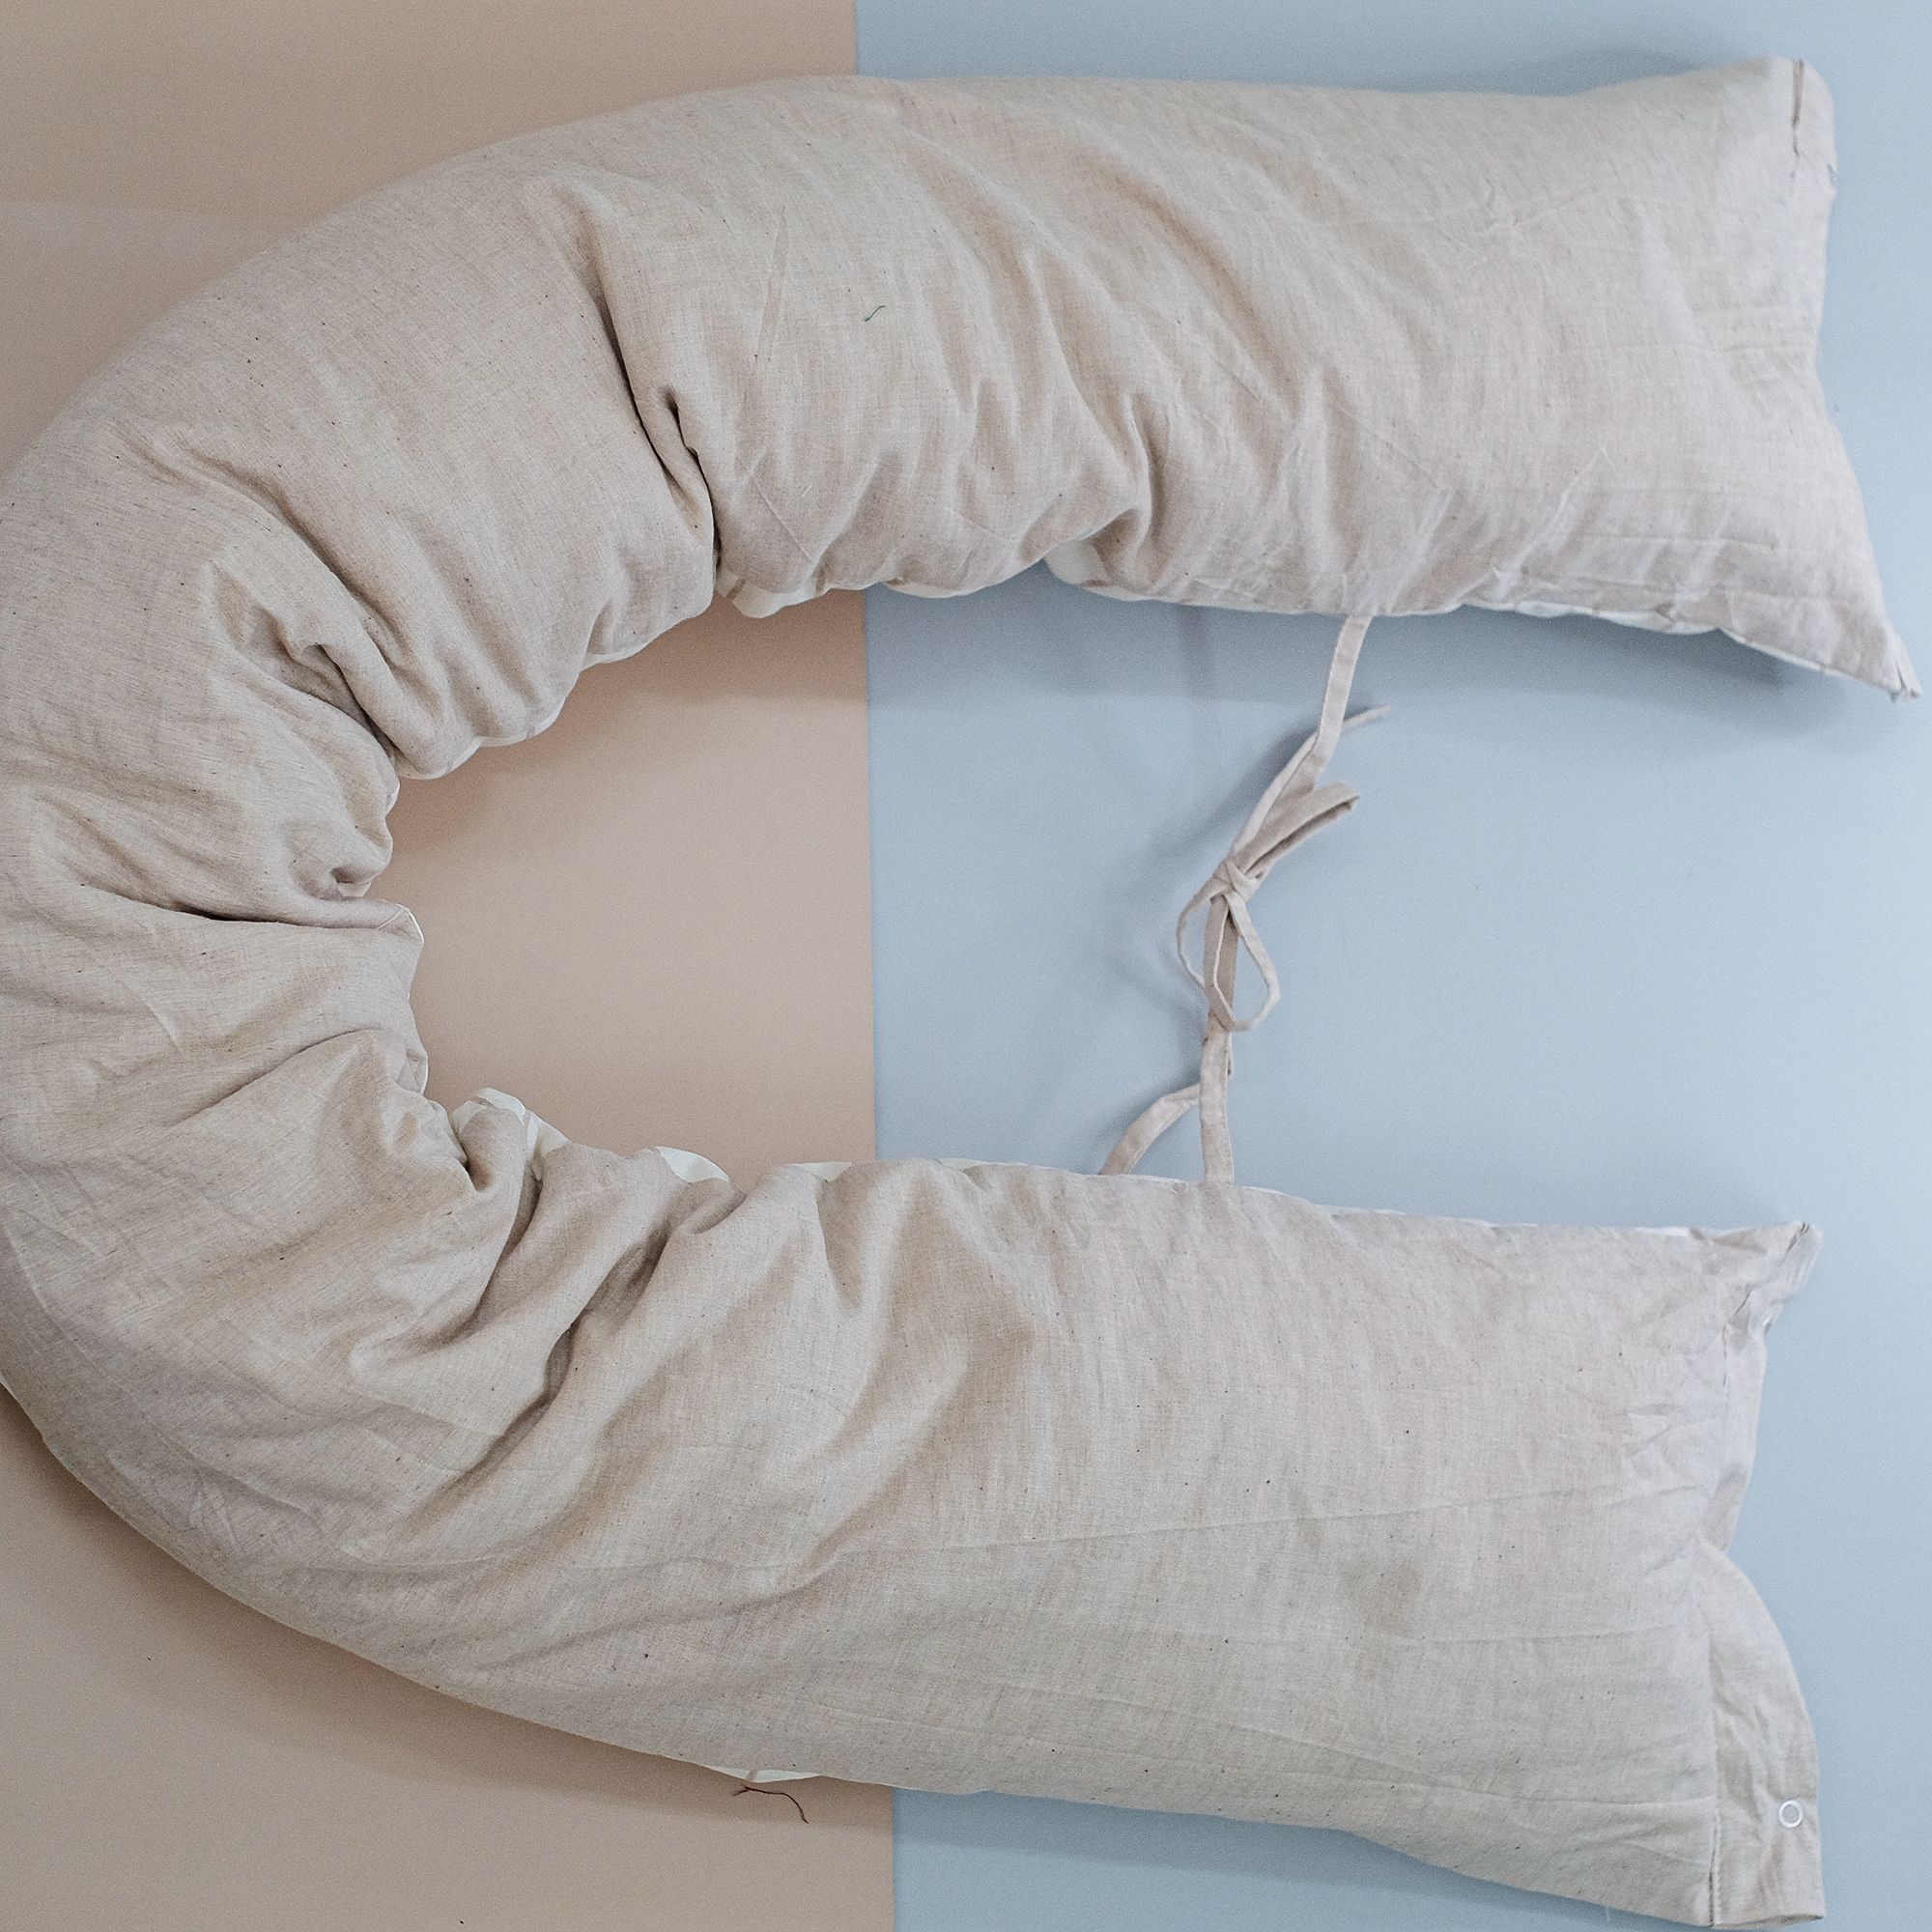  Ruột gối ôm đa năng 25x160cm | Multifunctional nursing Pillow | CHOI SEWING 